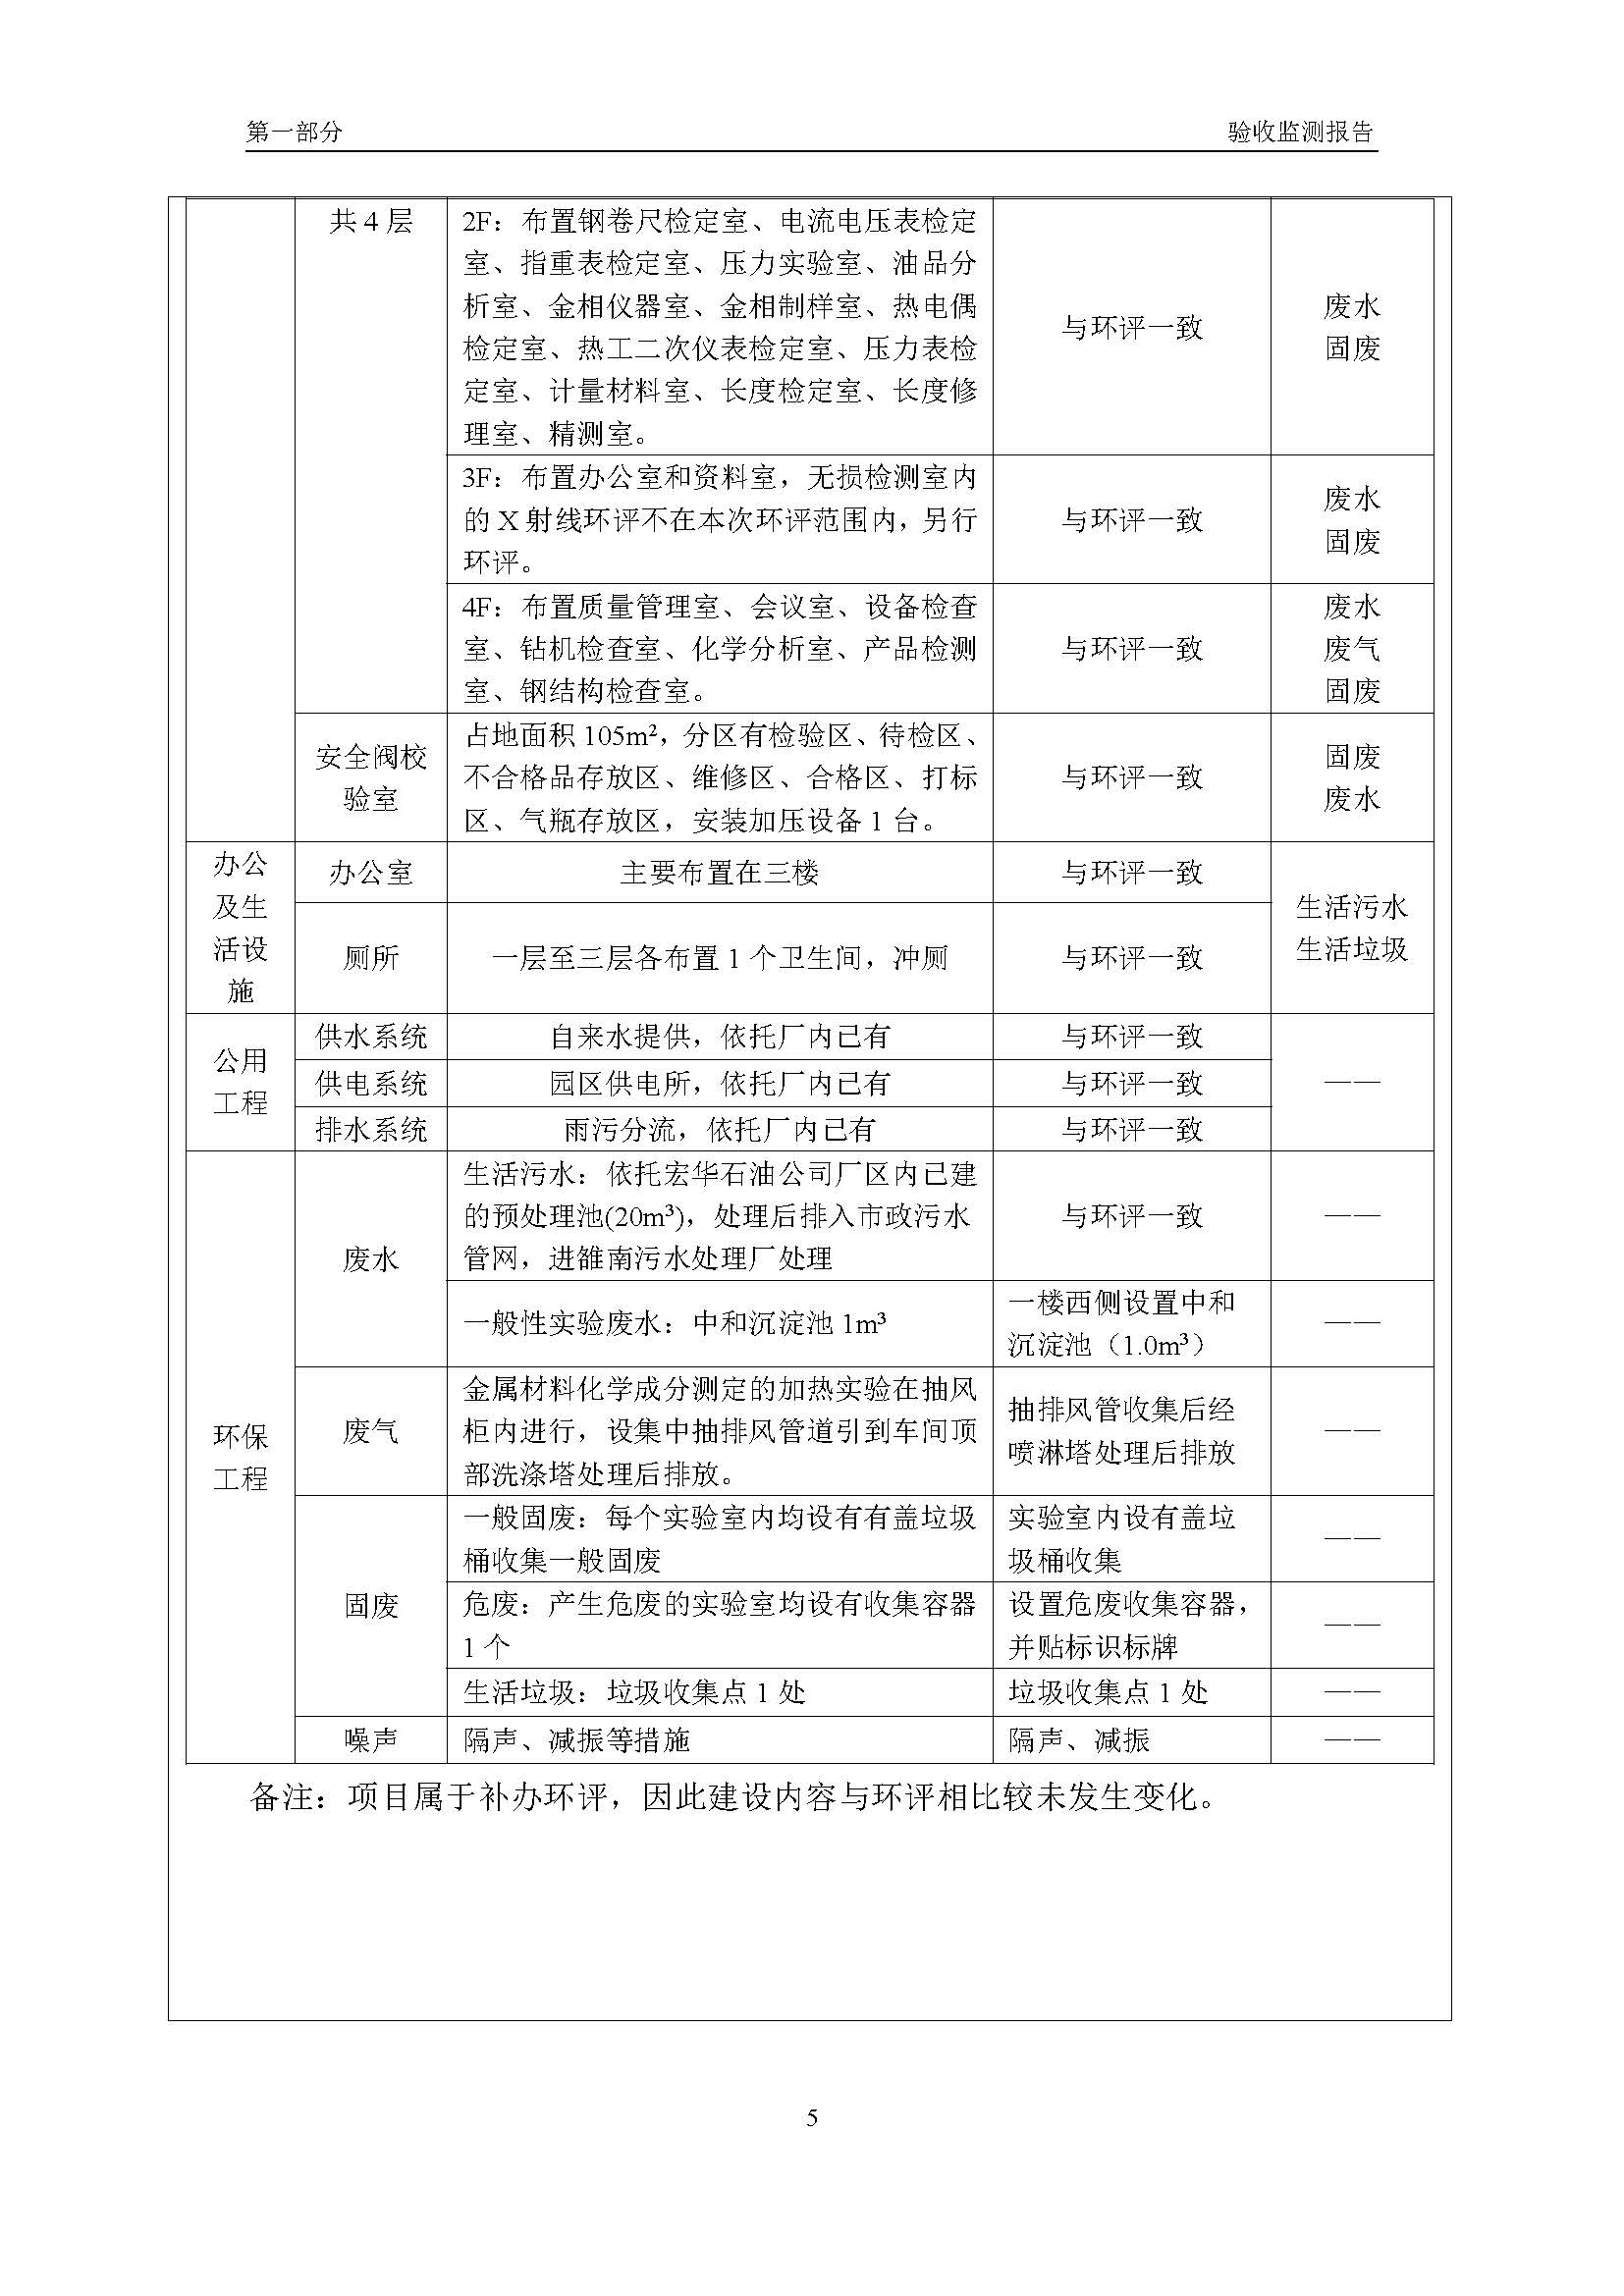 汉正检测环评验收报告 2018.05.31_页面_07.jpg